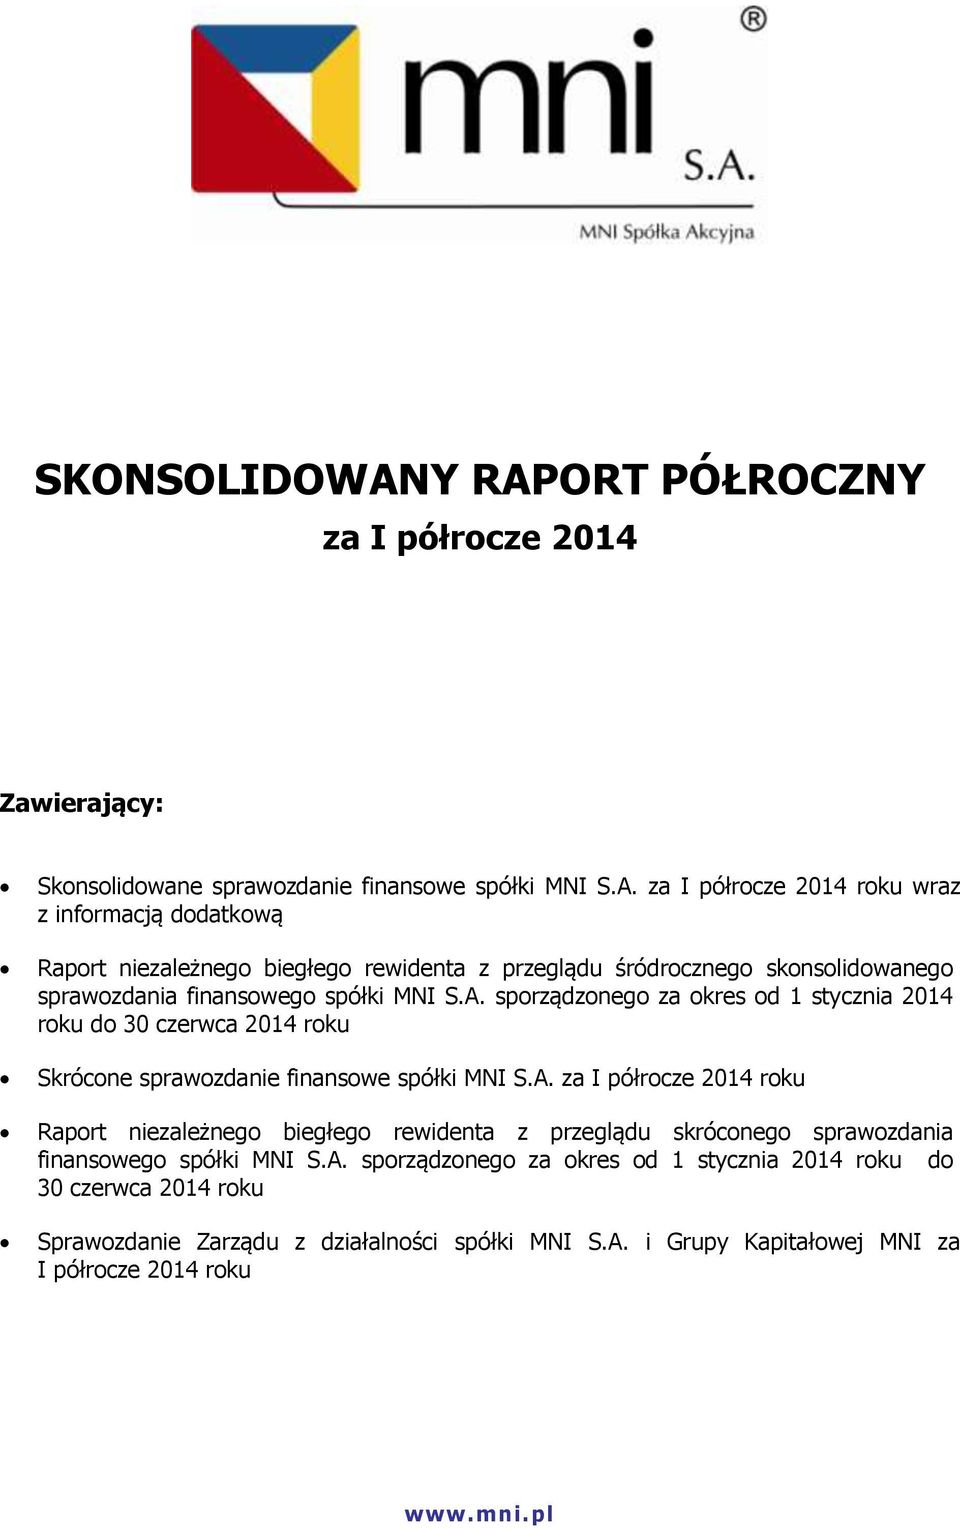 A. sporządzonego za okres od 1 stycznia 2014 roku do 30 czerwca 2014 roku Skrócone sprawozdanie finansowe spółki MNI S.A. za I półrocze 2014 roku Raport niezależnego biegłego rewidenta z przeglądu skróconego sprawozdania finansowego spółki MNI S.